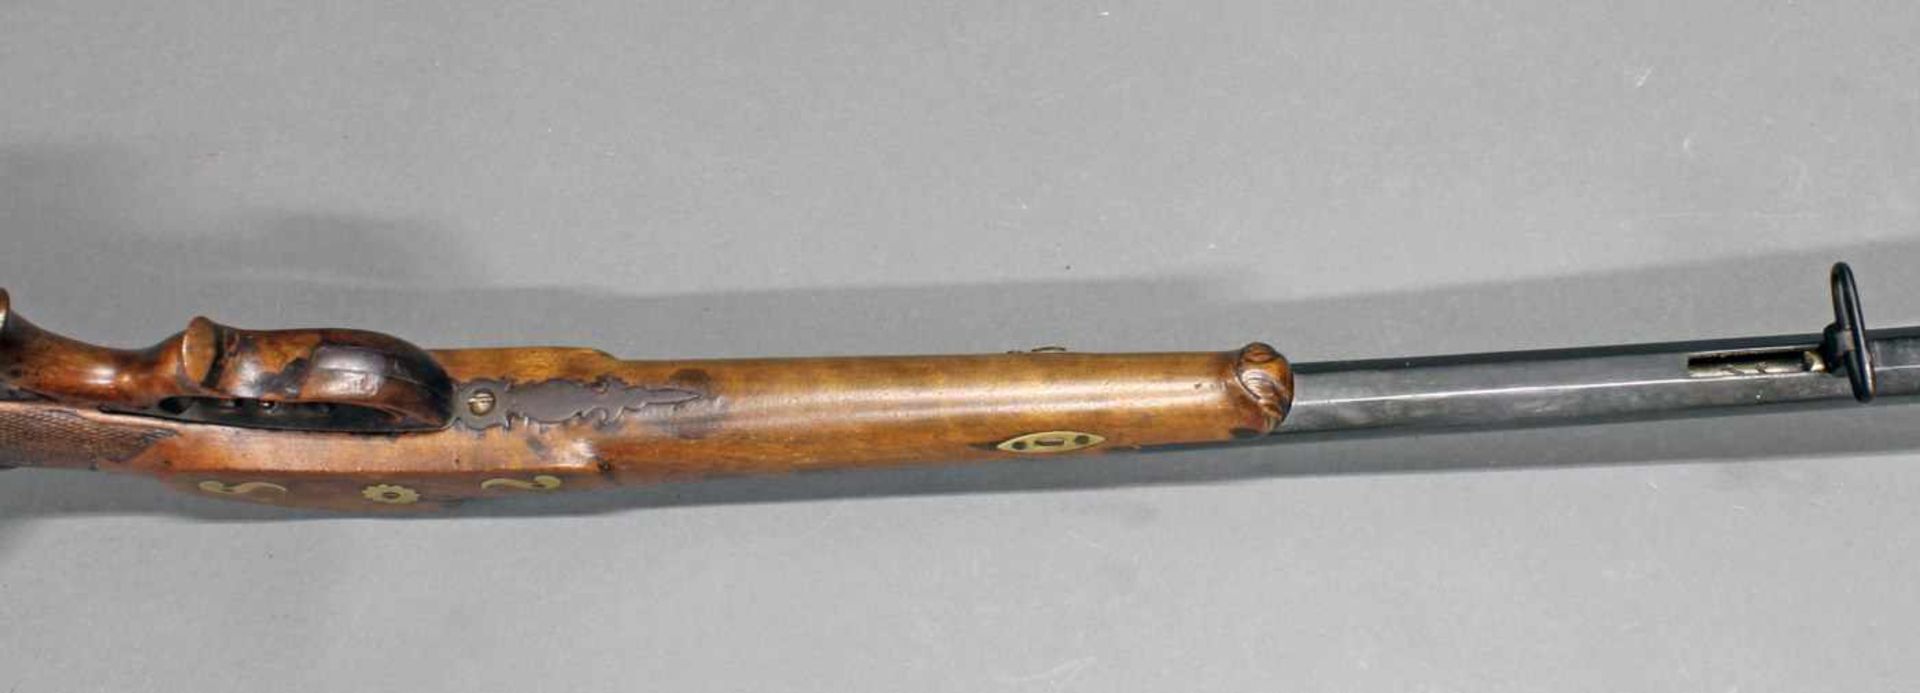 Zimmerstutzen/Salongewehr, deutsch, um 1850/60, Nussbaumschaft mit Schaftverschneidung, durchbrochen - Bild 10 aus 10